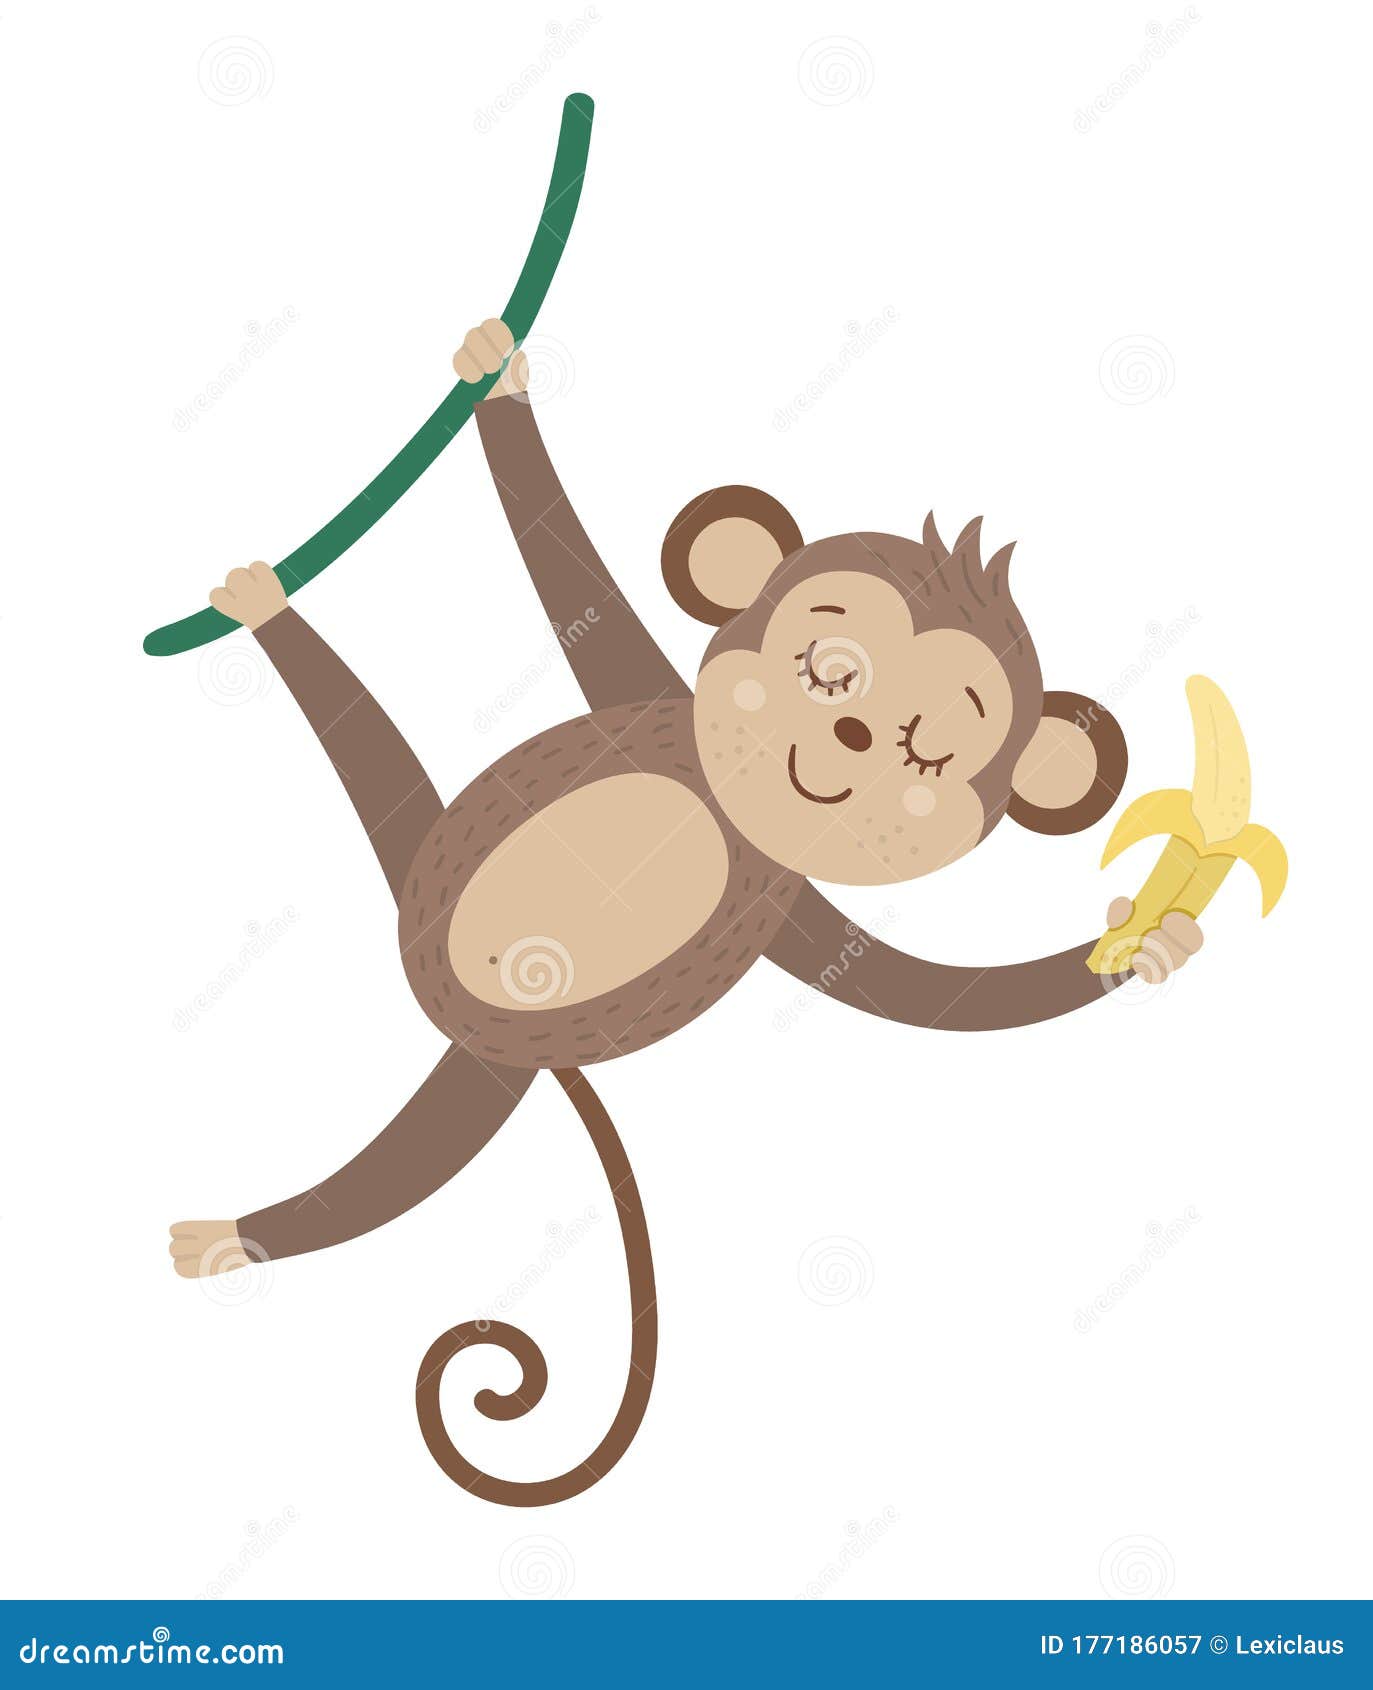 Vector khỉ đáng yêu treo trên dây leo và chuối trên nền trắng là một cách tuyệt vời để tạo nên những hình ảnh độc đáo cho công việc của bạn. Bộ sưu tập này chứa đầy những hình ảnh đa dạng và tươi sáng, giúp bạn dễ dàng lựa chọn và sử dụng.